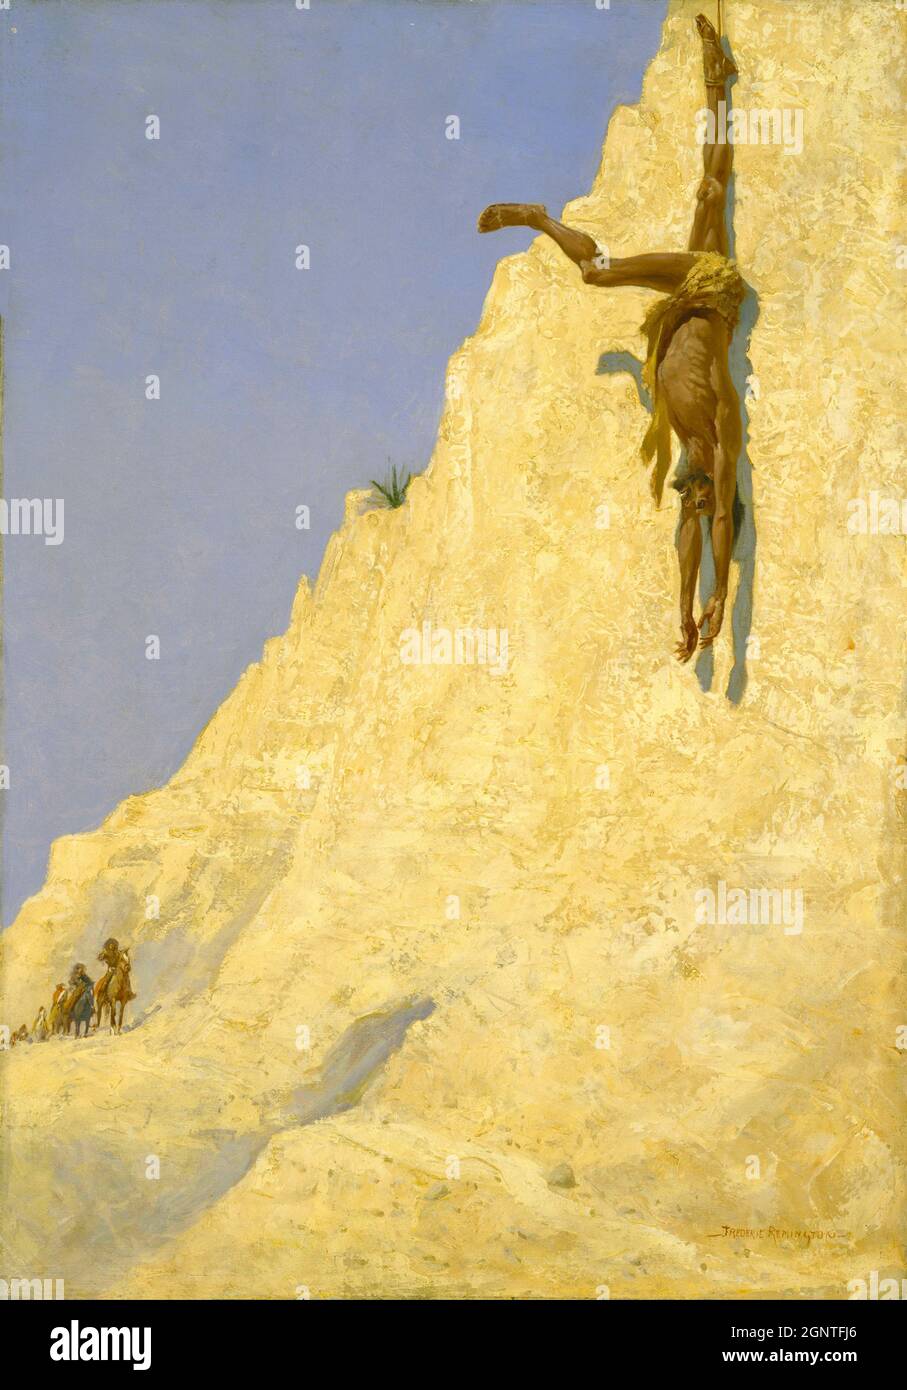 Frederick Remington artwork - il trasgressore - Un uomo si appende capovolto legato da una gamba. Una presunta punizione. I fatti restano poco chiari. Foto Stock